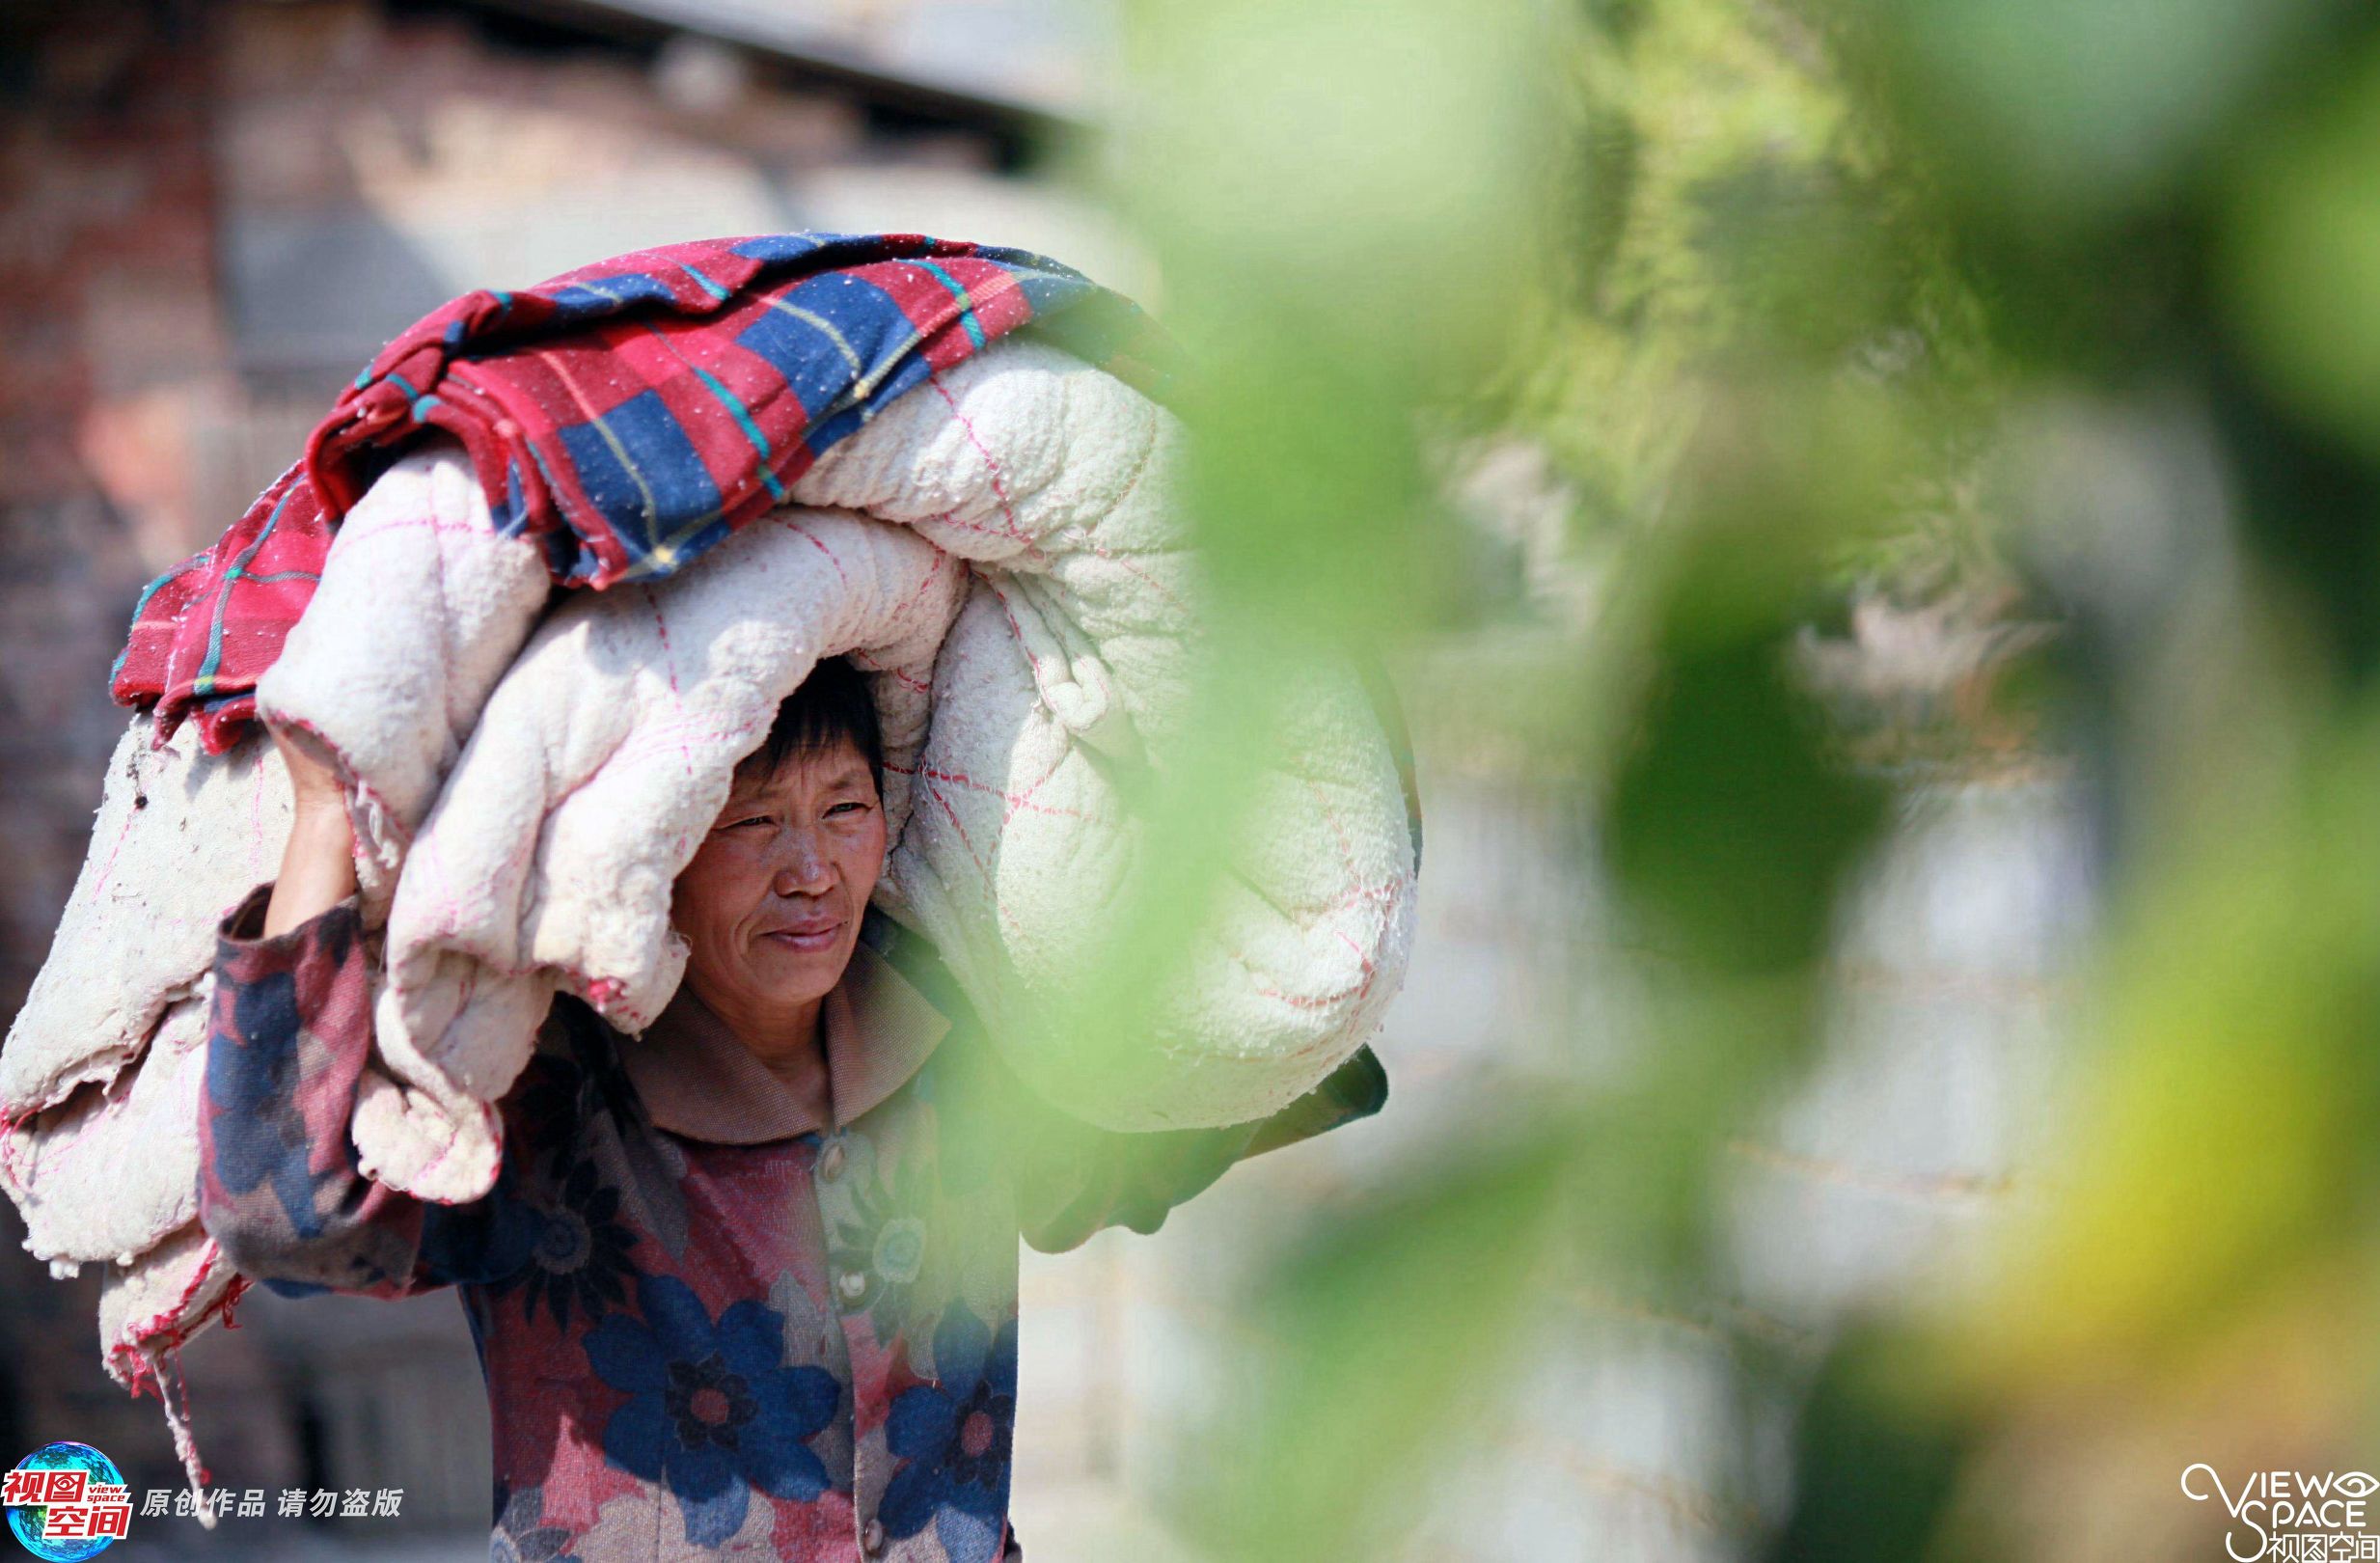 在桂林市兴安县湘漓镇的中唐家村，年过九旬的唐秀英已瘫痪在床30多年了。在近30年中，儿媳妇李玉英（左），把她照顾得无微不至。而老人无亲生儿女，仅有一名养子，李玉英就是其养子之妻。 